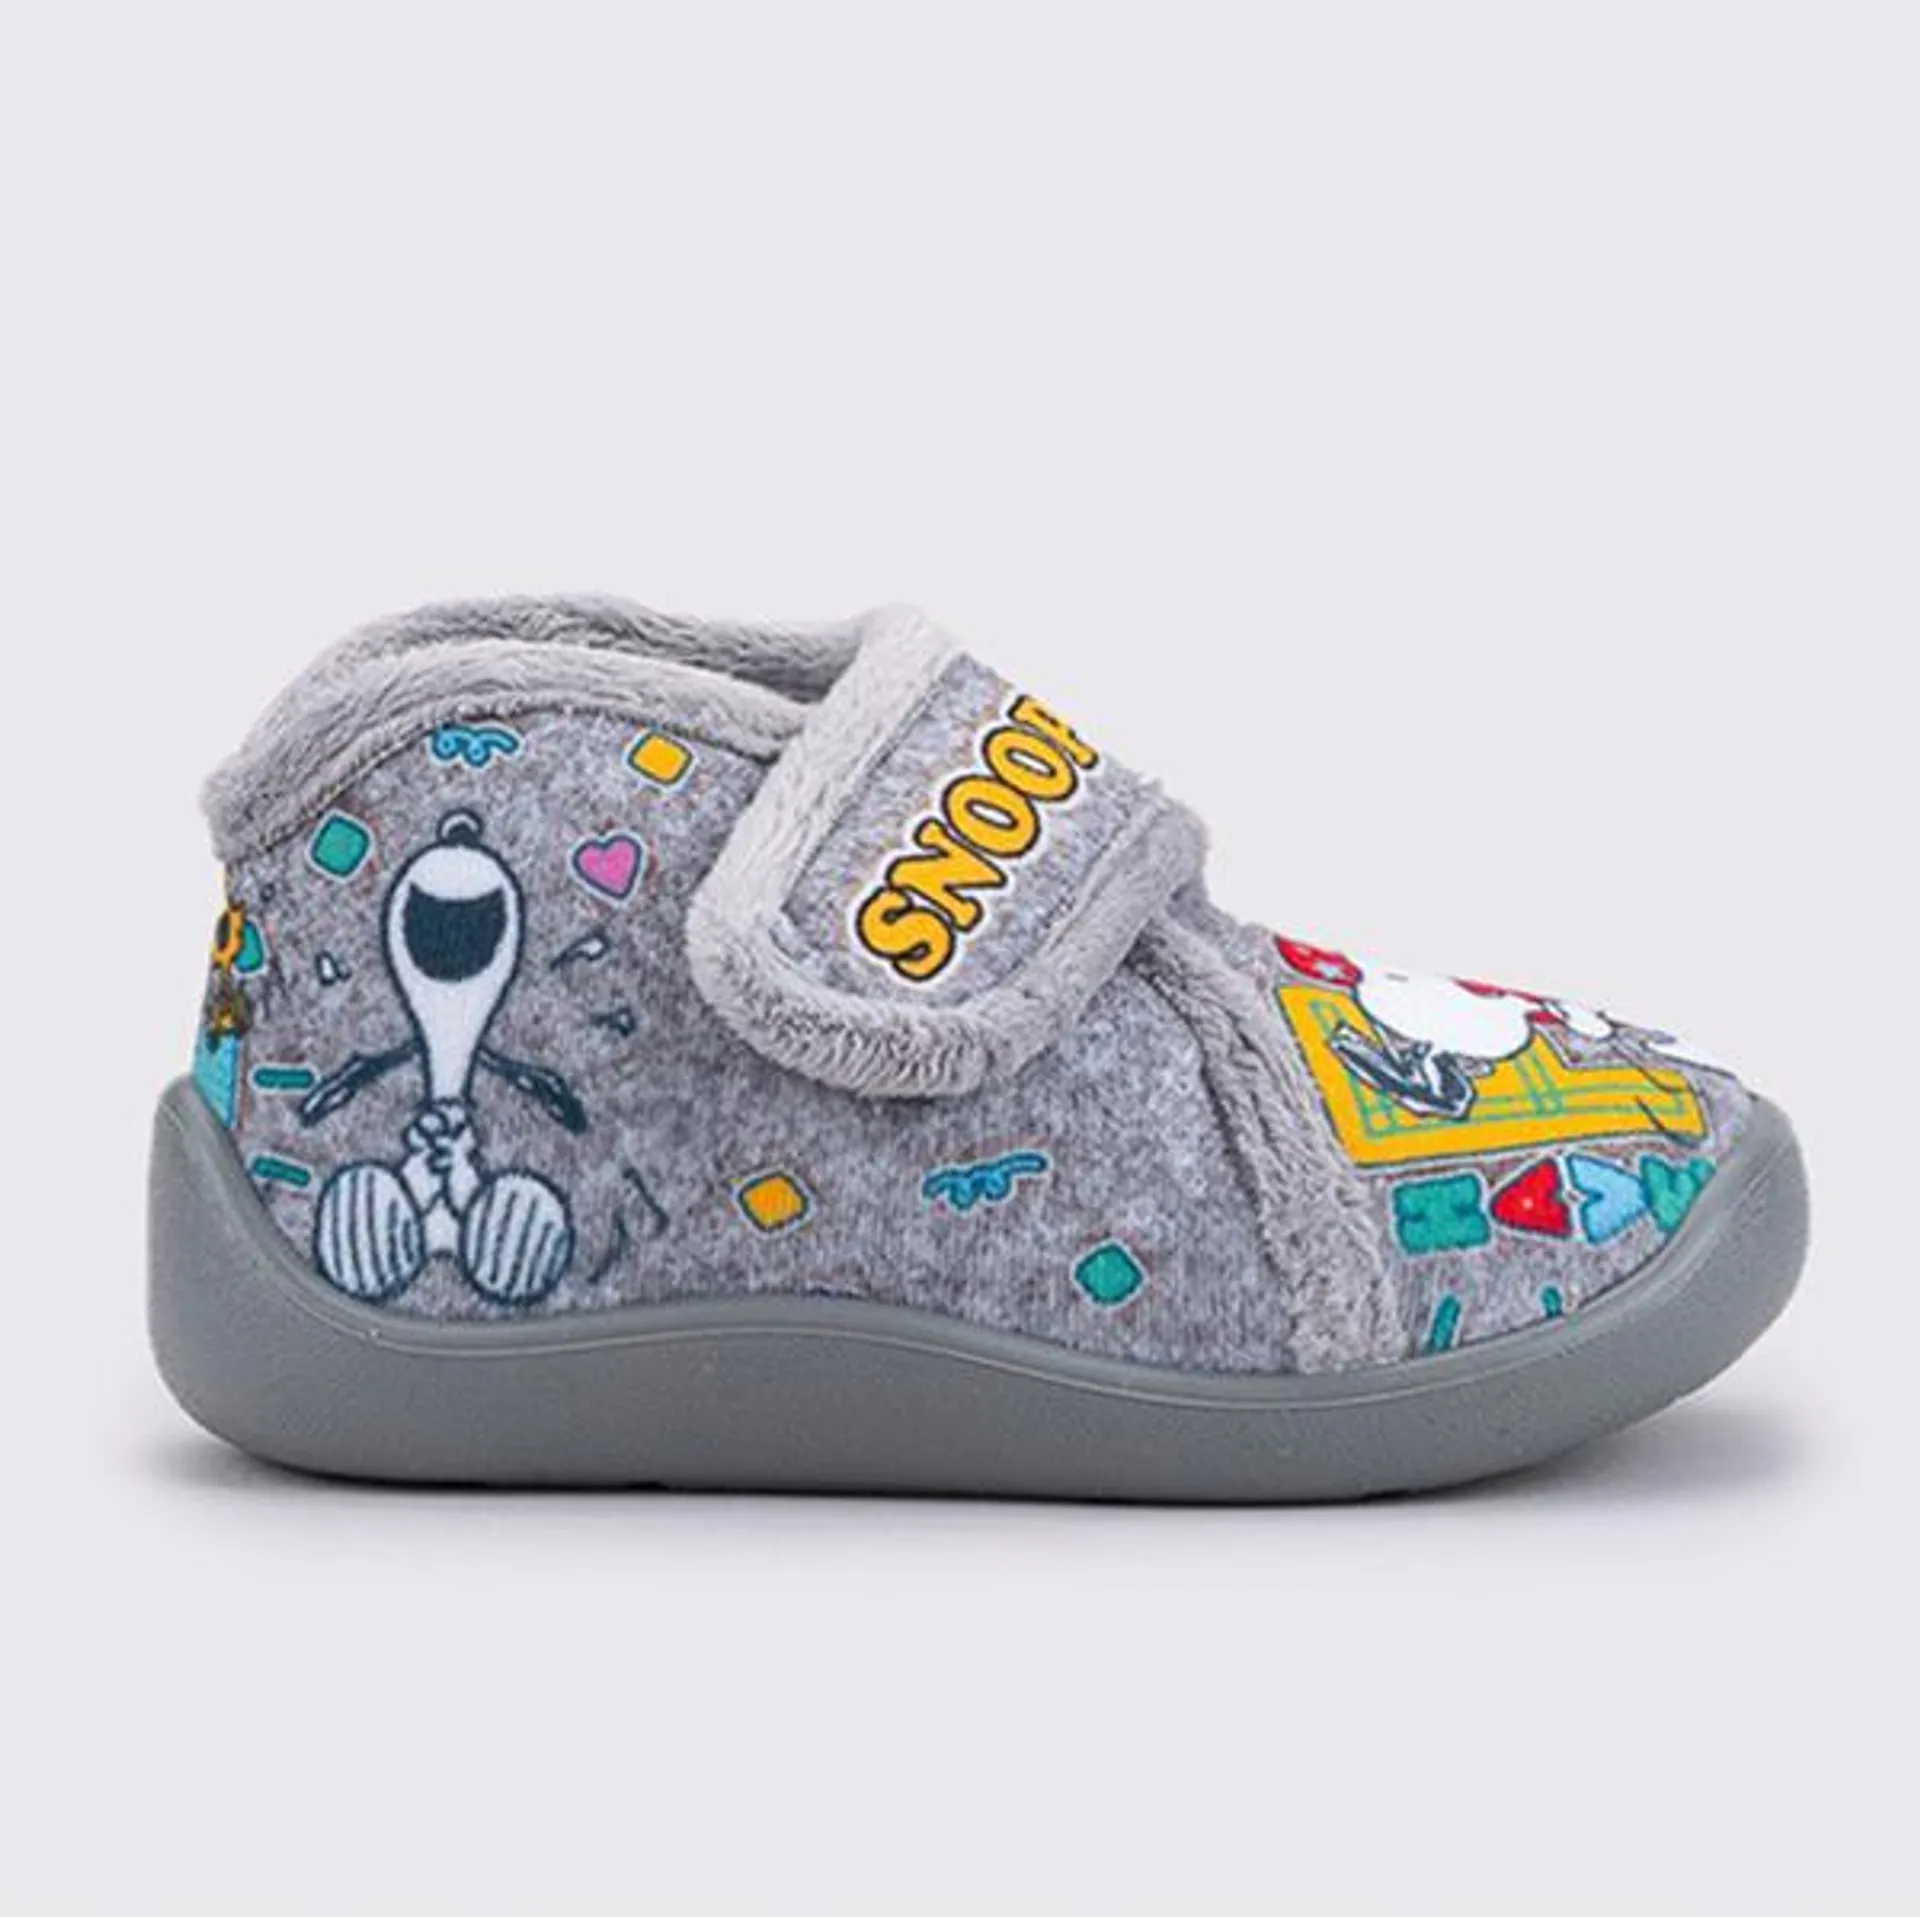 İgor W10286 Comfı Snoopy Laugh Çocuk Spor Ayakkabı Gri